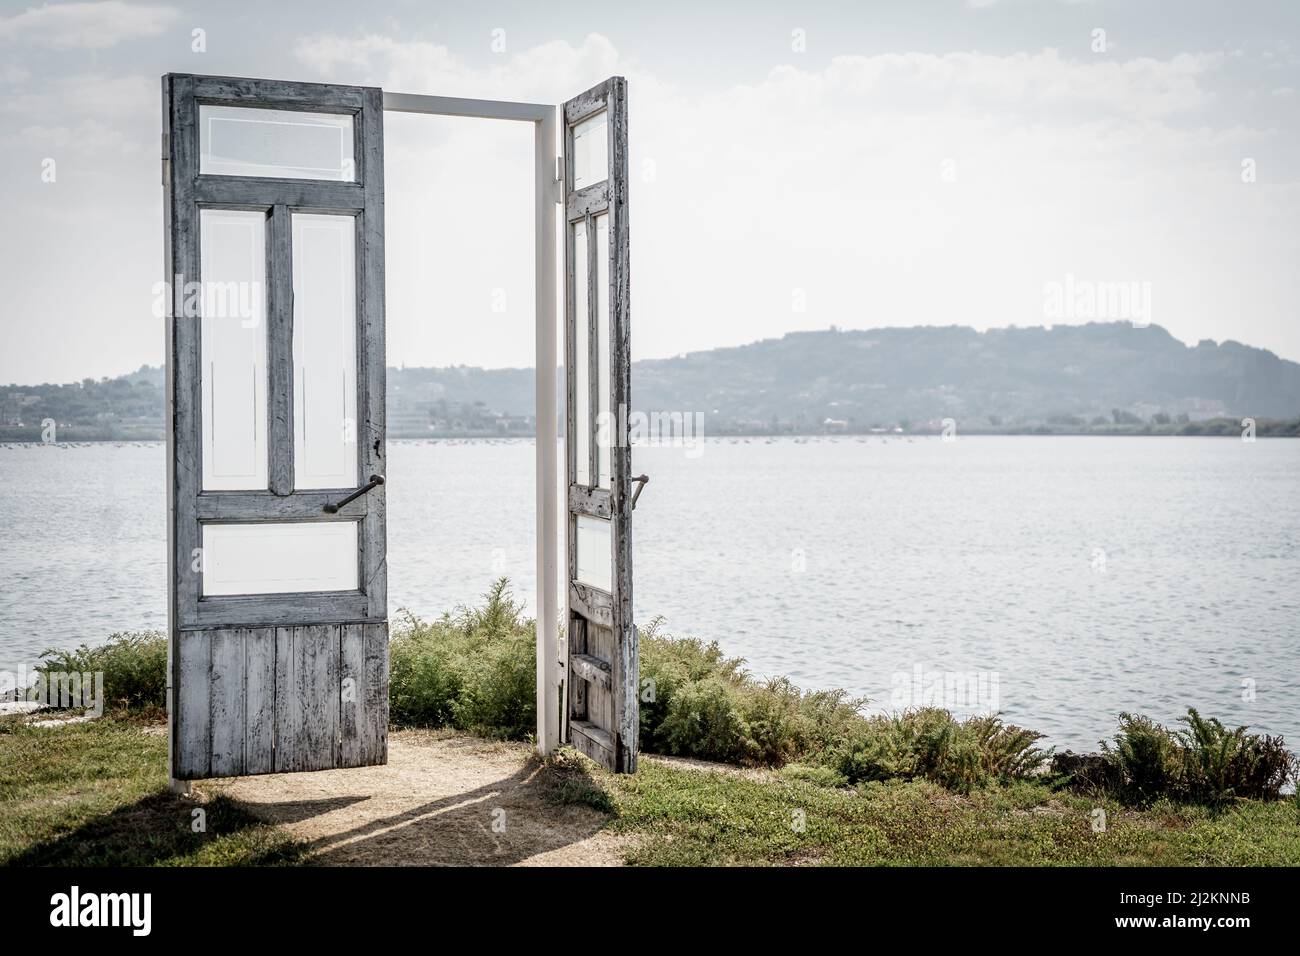 Porte ouverte symbolique en bois sur un lac, concept de porte ouverte à la nature et au changement climatique. Banque D'Images